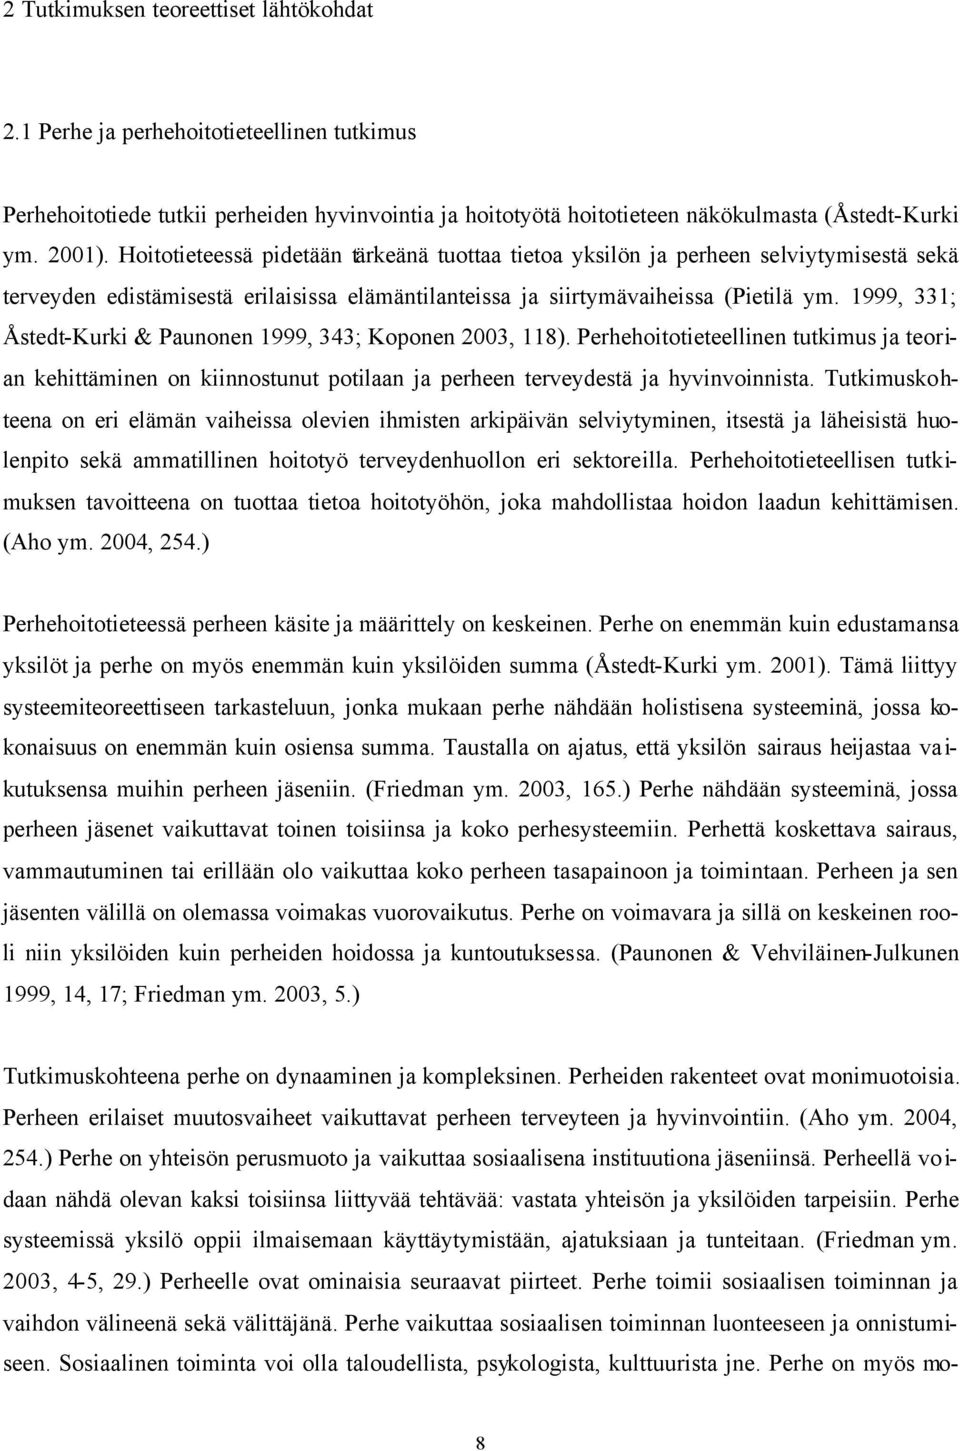 1999, 331; Åstedt-Kurki & Paunonen 1999, 343; Koponen 2003, 118). Perhehoitotieteellinen tutkimus ja teorian kehittäminen on kiinnostunut potilaan ja perheen terveydestä ja hyvinvoinnista.